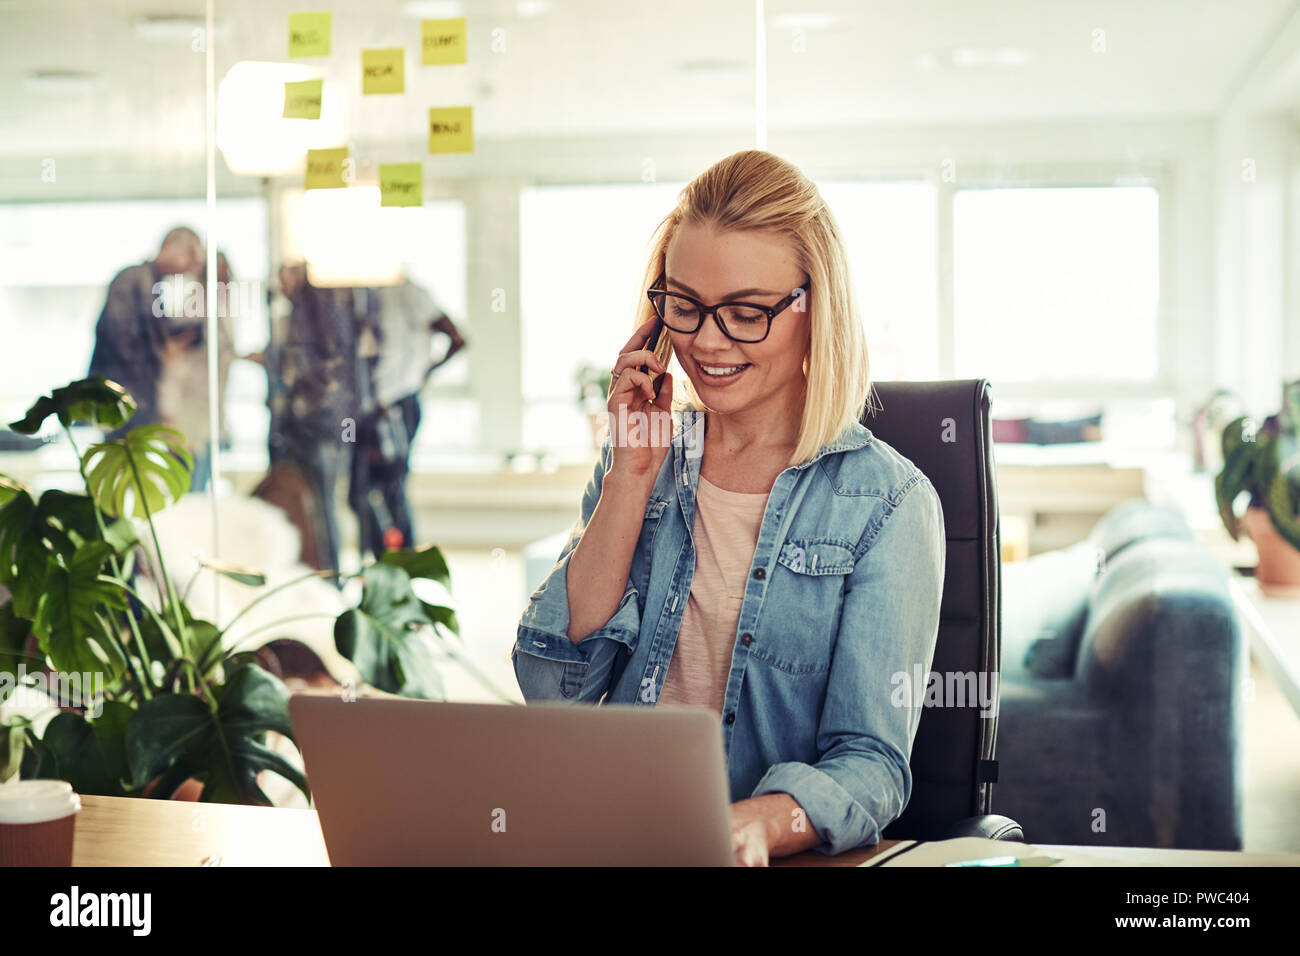 Les jeunes habillés en passant businesswoman smiling tandis qu'assis à un bureau dans un bureau à parler sur son portable et de travail avec un ordinateur portable en ligne Banque D'Images